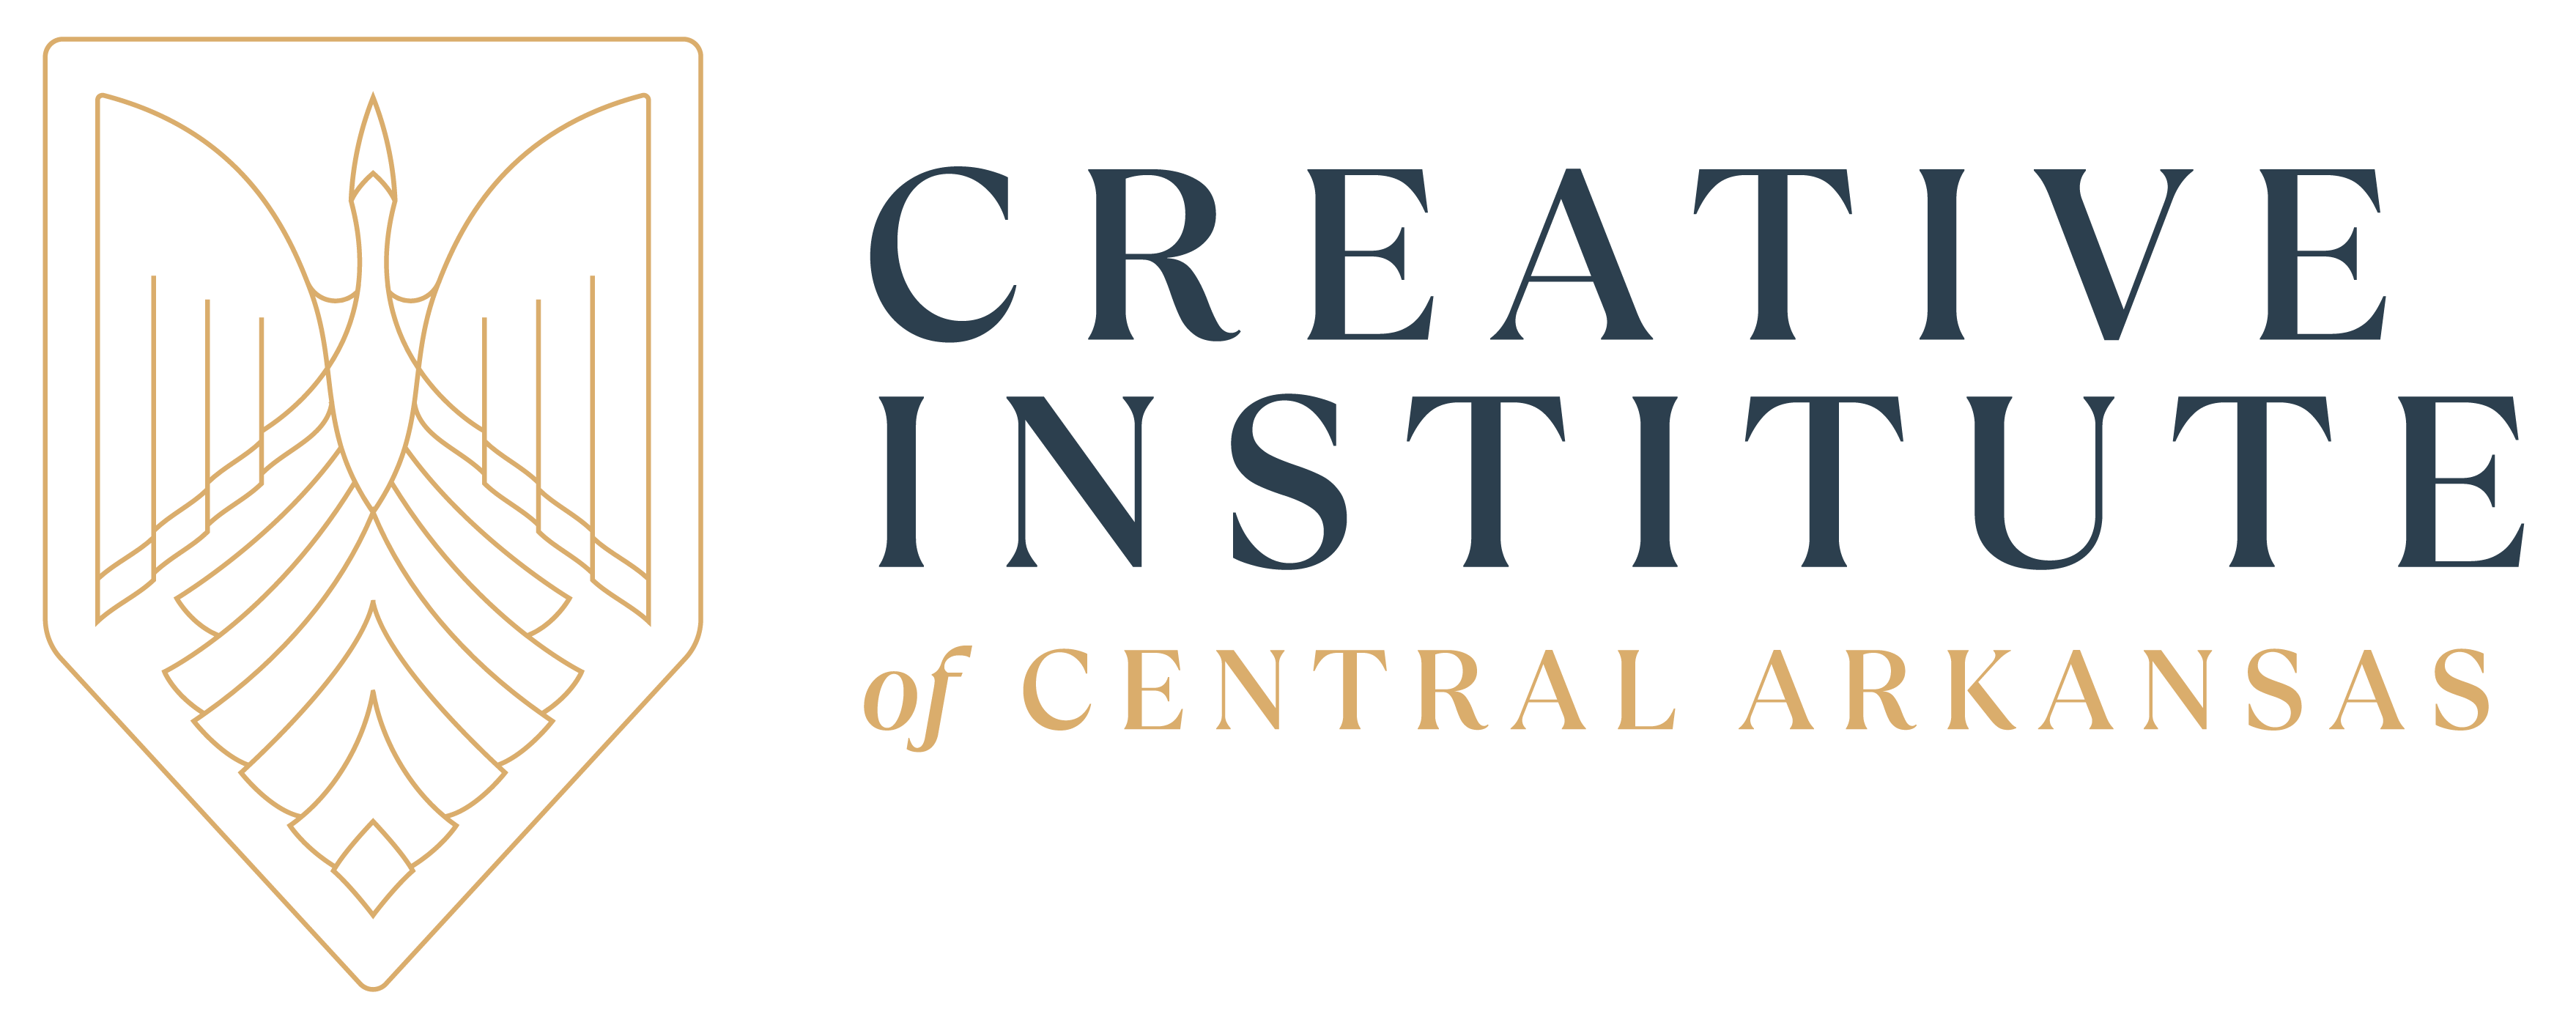 Creative Institute of Central Arkansas logo